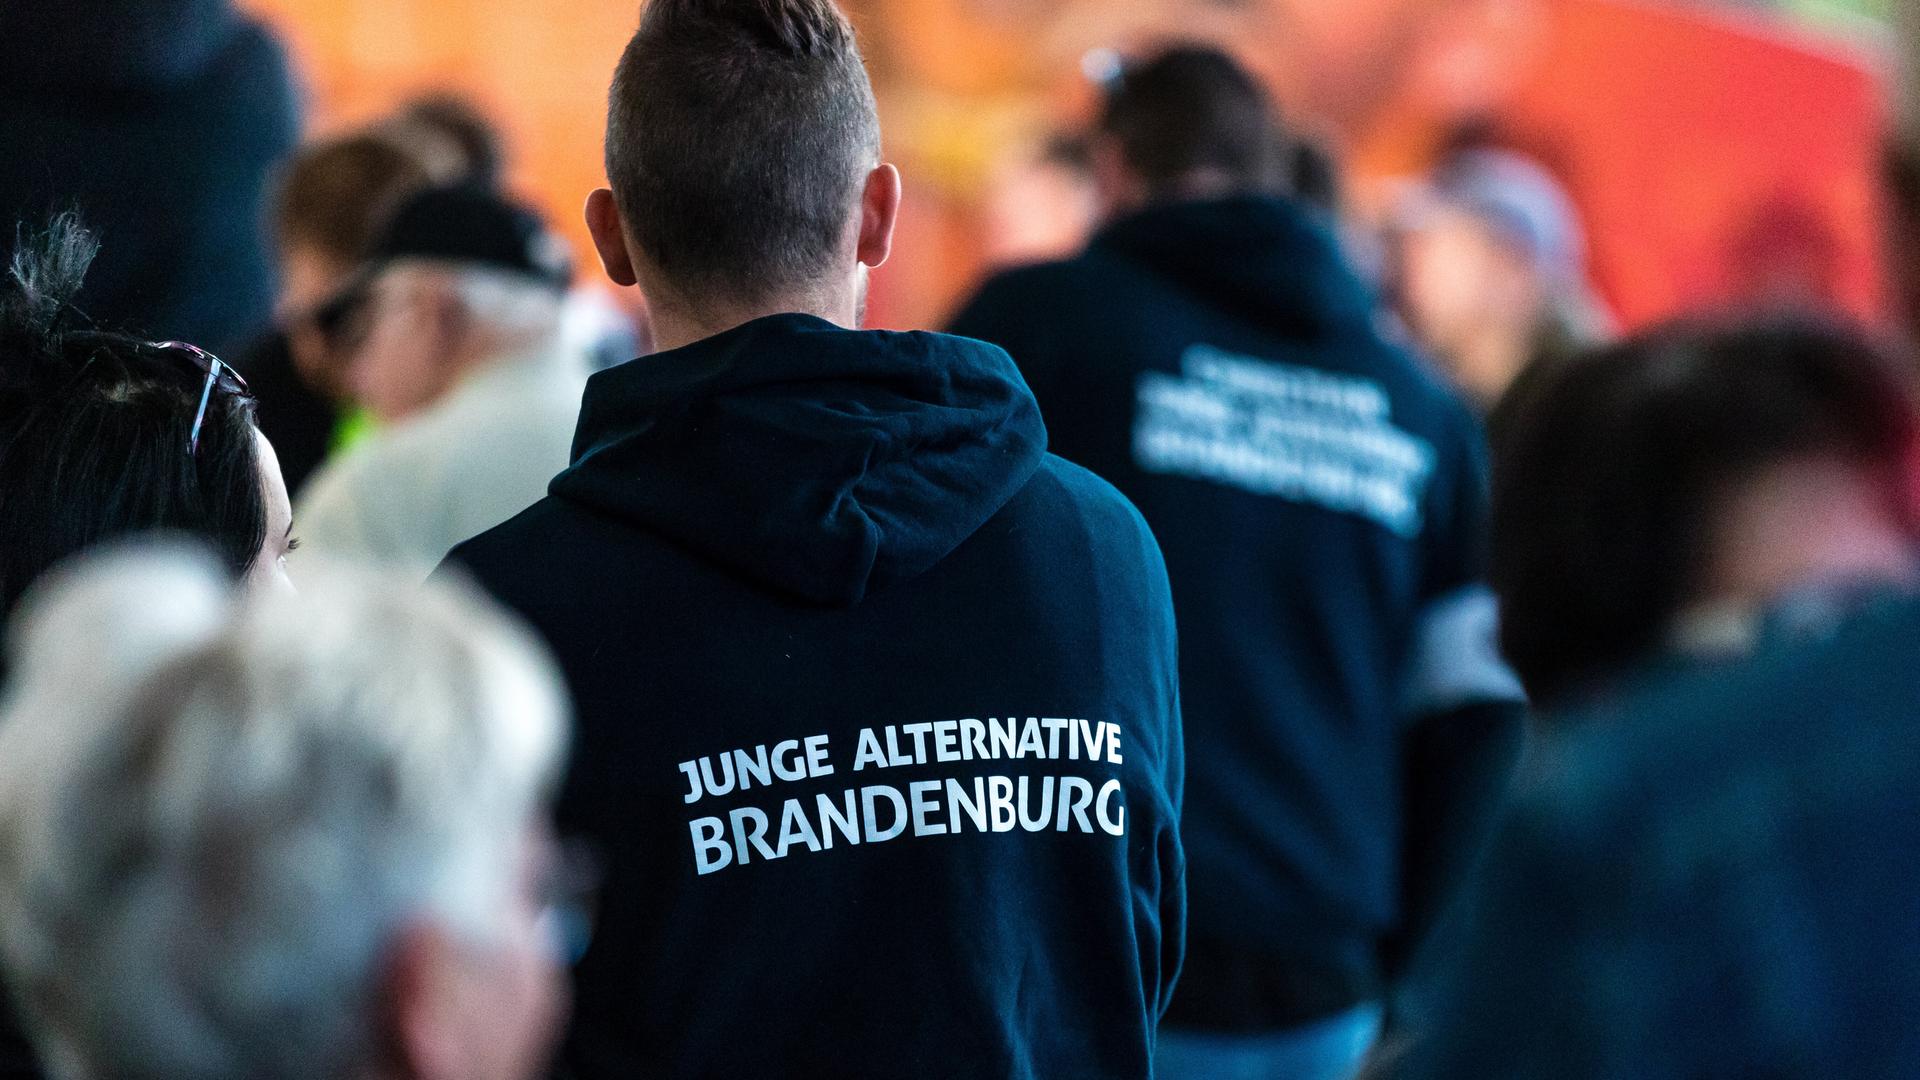 Teilnehmer einer Wahlkampfveranstaltung tragen Kleidung mit der Aufschrift "Junge Alternative Brandenburg".  